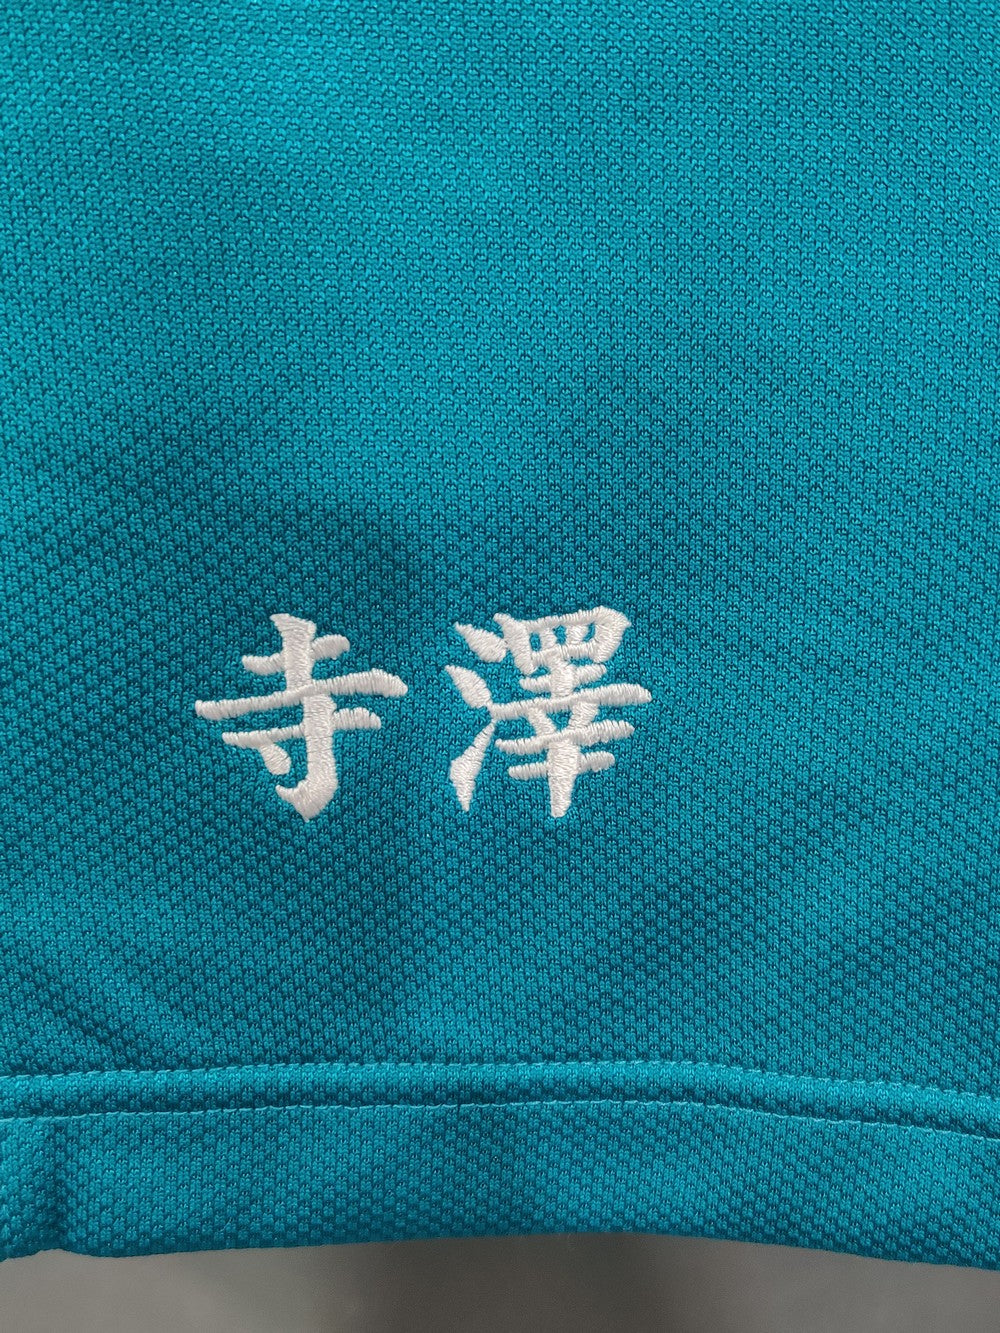 Nikko Branded Original Polyester For Men Tracksuits